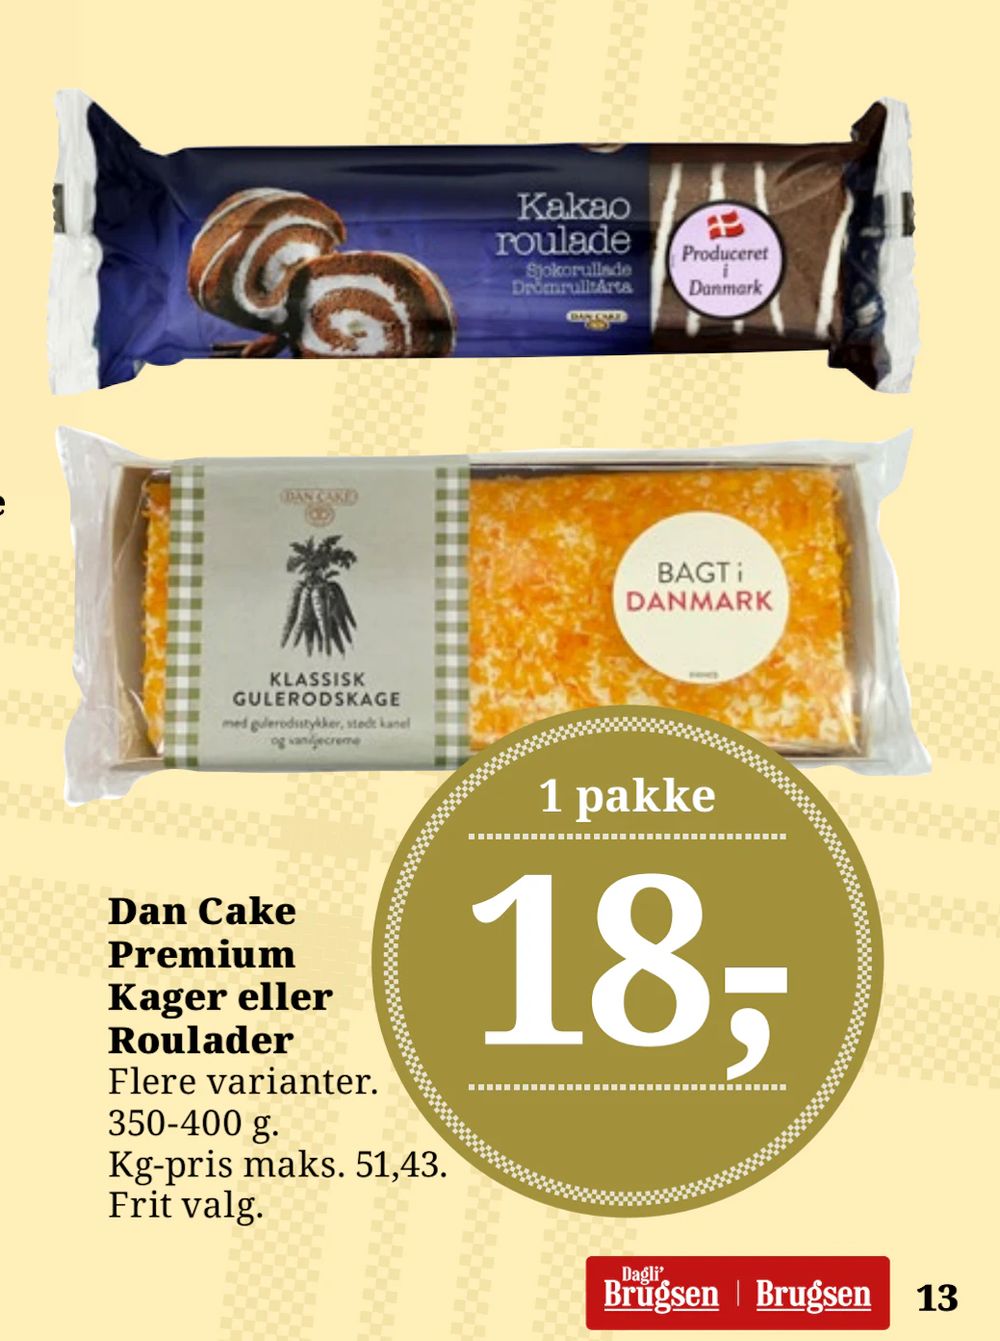 Tilbud på Dan Cake Premium Kager eller Roulader fra Brugsen til 18 kr.